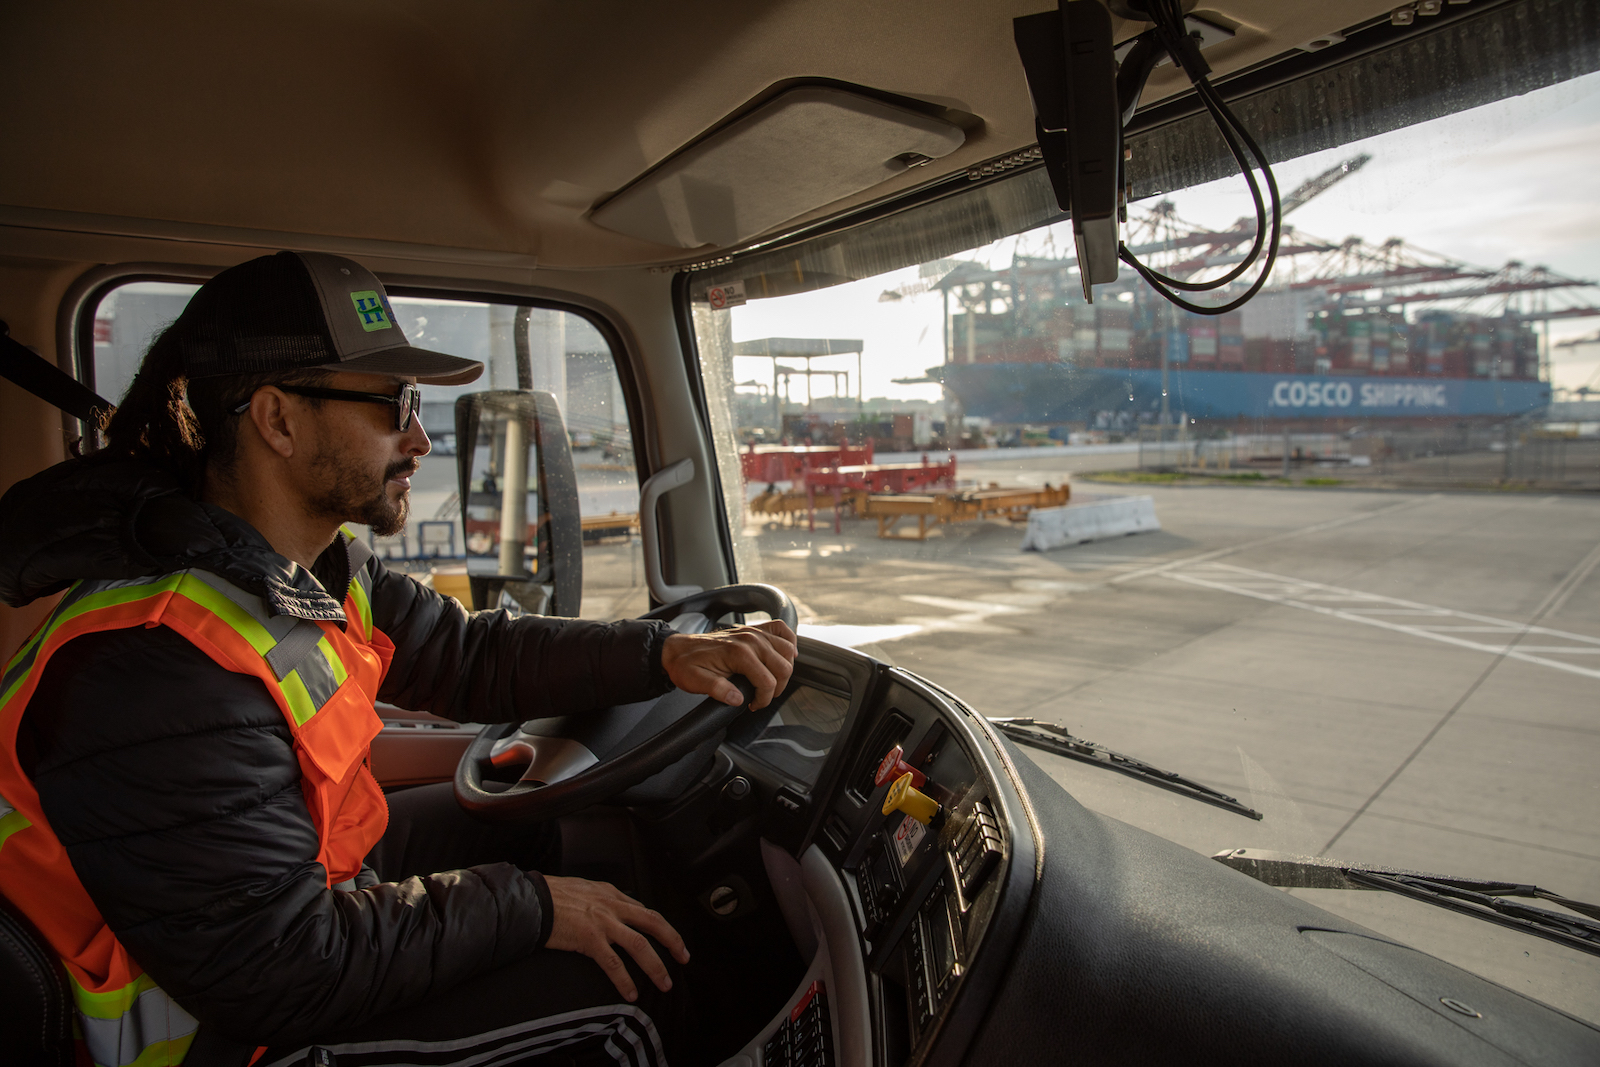 un homme vêtu d'un gilet orange et d'un chapeau de camionneur est assis à l'intérieur de la cabine d'un gros camion roulant près de conteneurs d'expédition